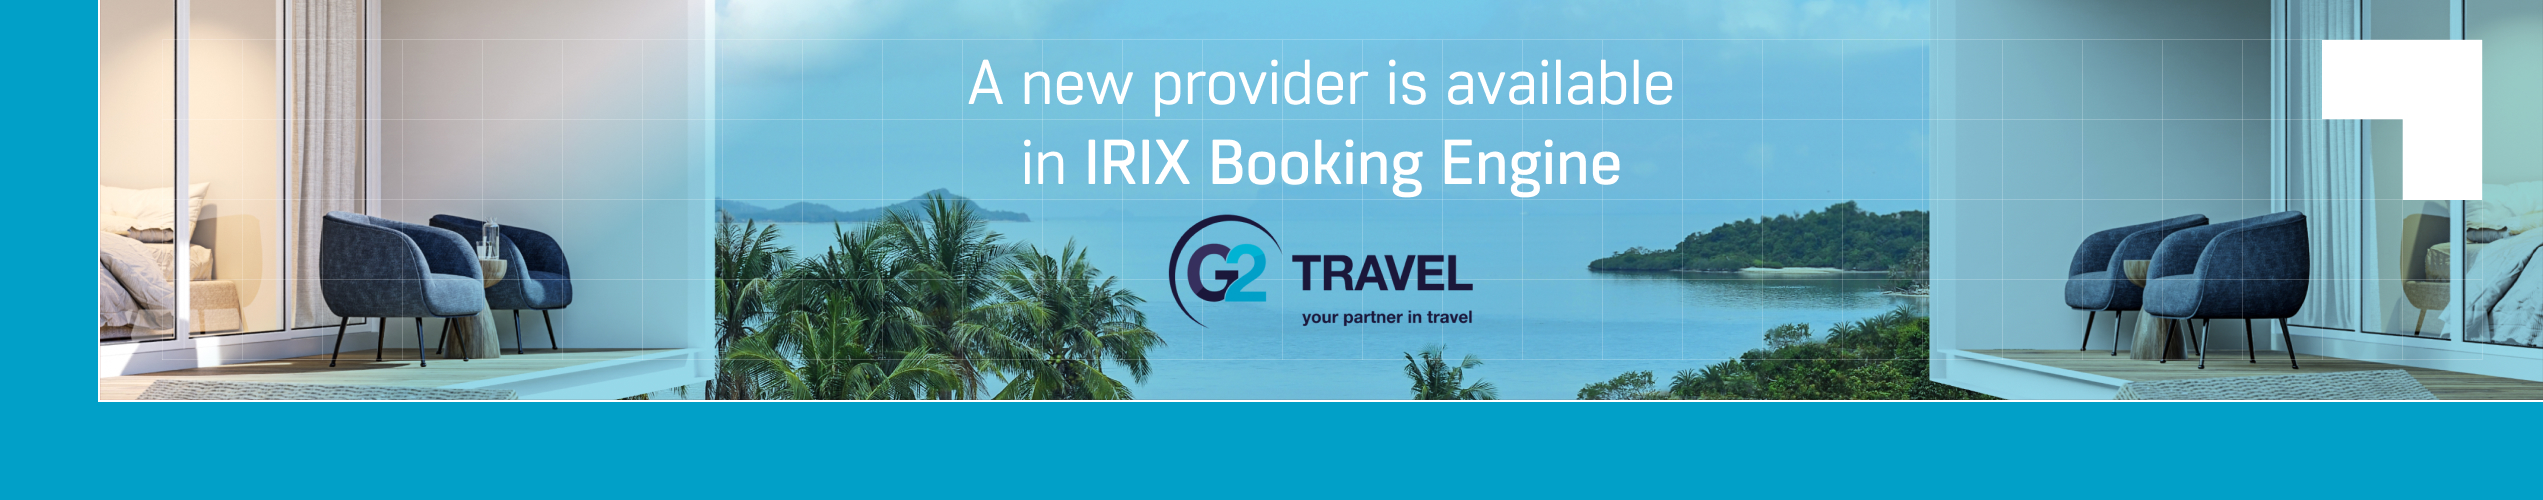 G2 Travel in IRIX Booking Engine